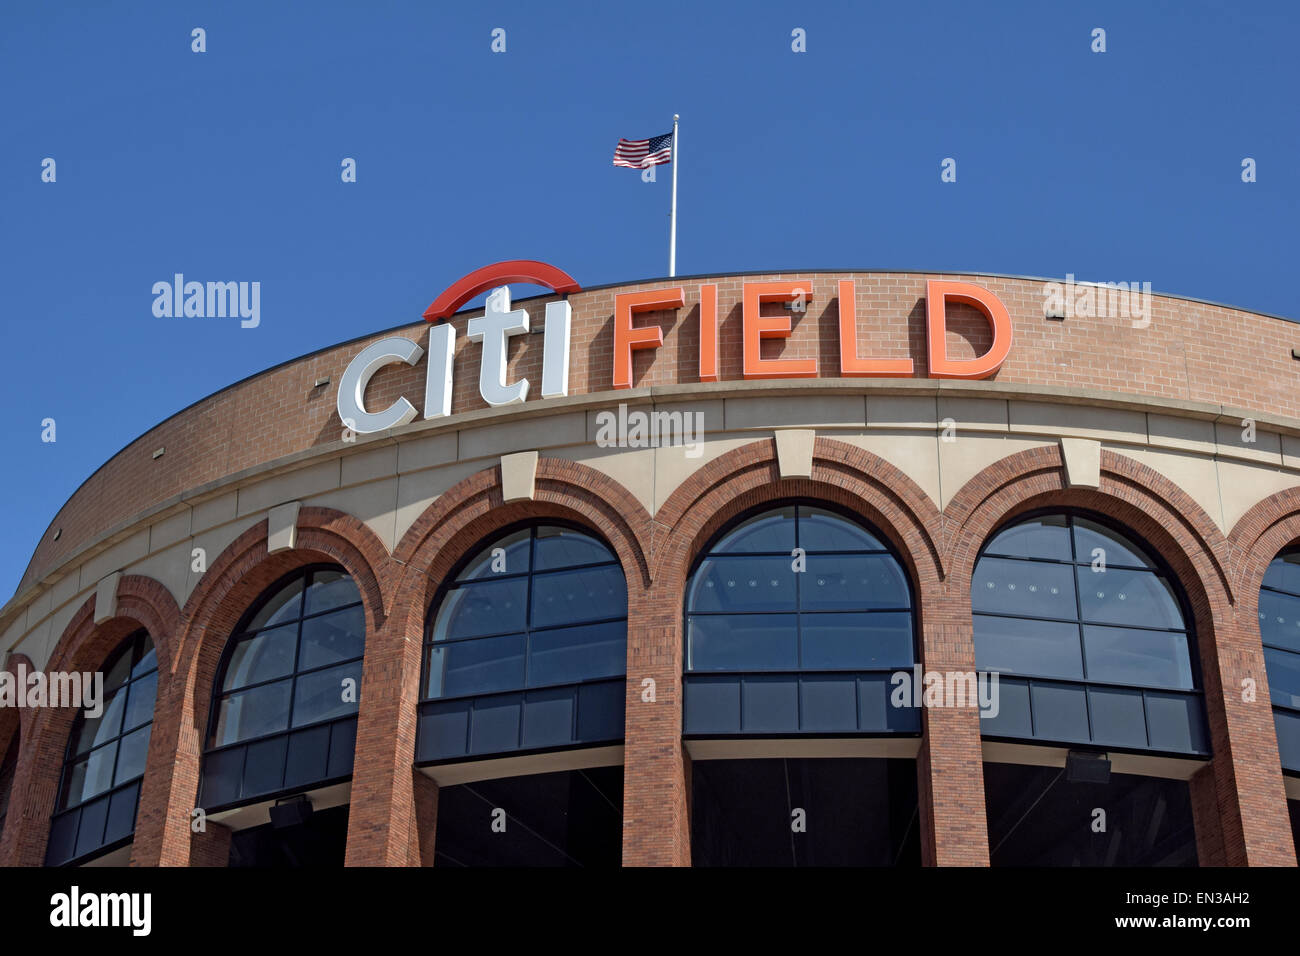 La bandiera americana al vento in cima Citi Field, casa dei New York Mets squadra di baseball nel lavaggio, Queens, a New York. Foto Stock